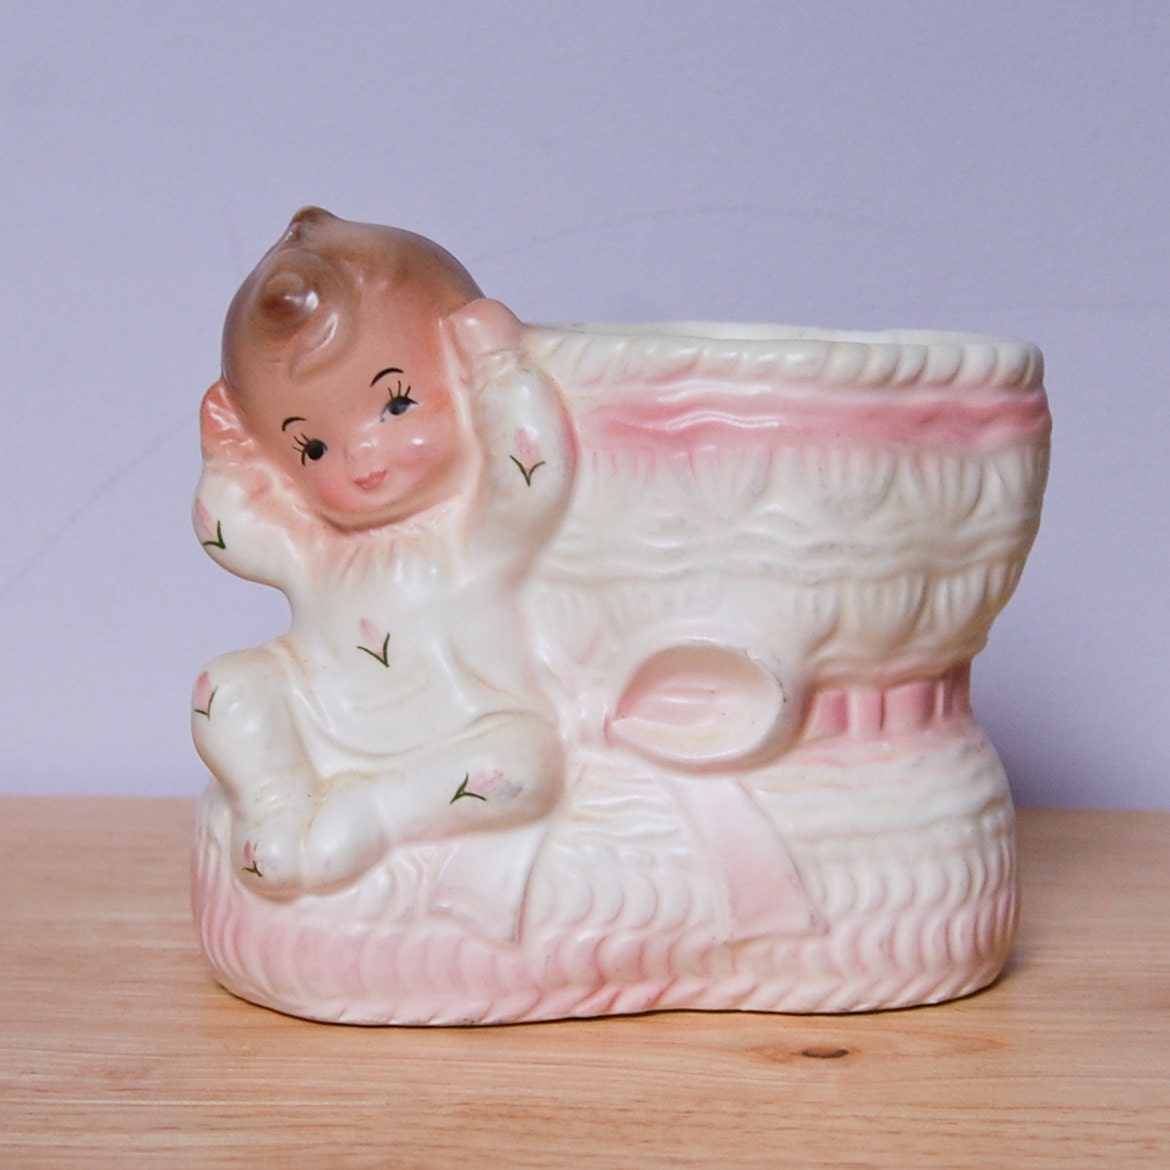 Rubens Originals Pink Baby on Bootie Planter #299 - New Baby Gift Newborn Cute Home Decor Nursery Decor - SheFindsVintage